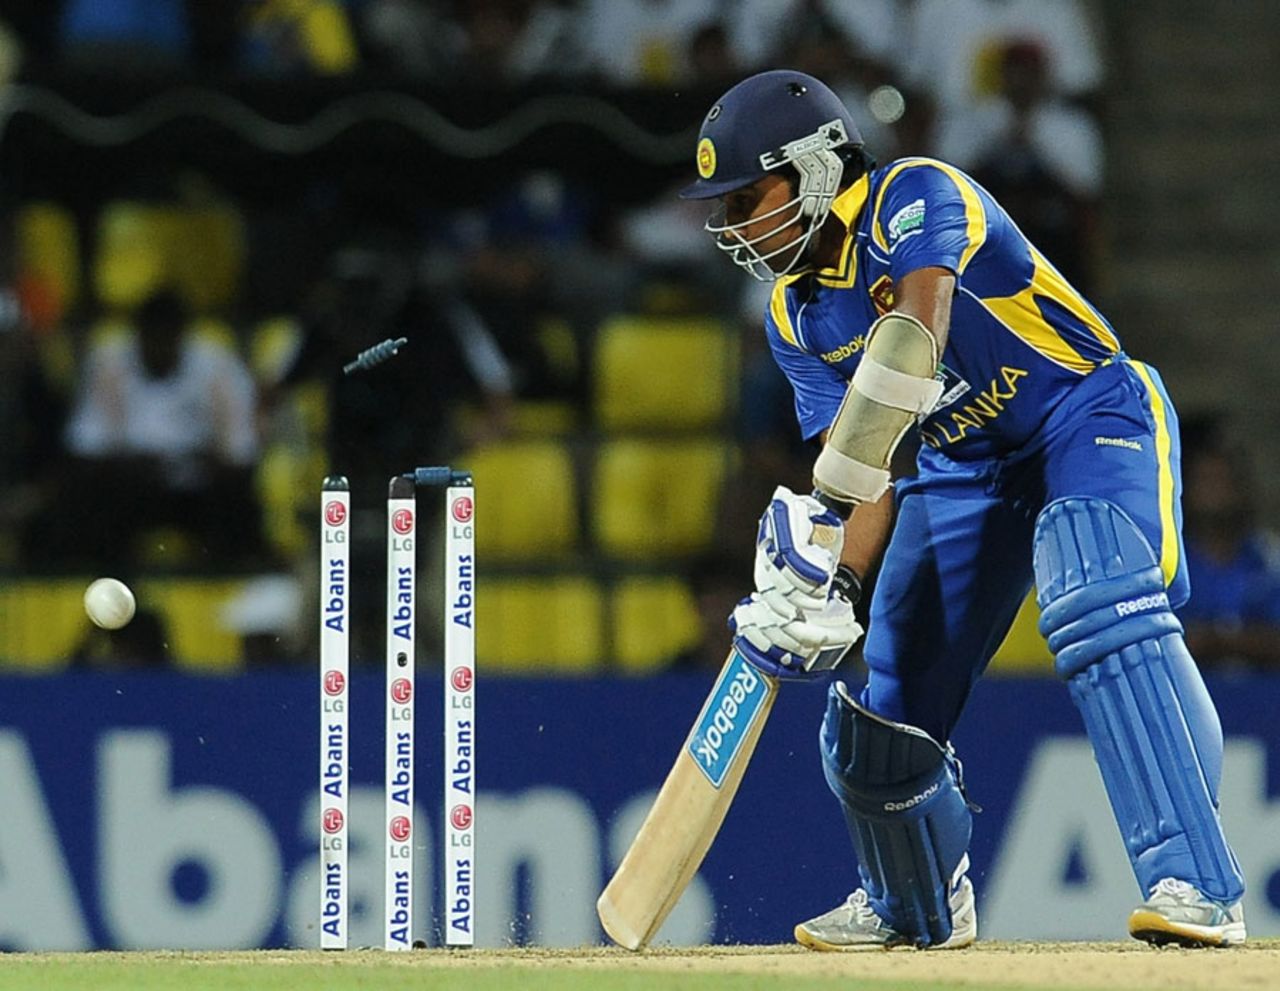 Mahela Jayawardene is bowled for 11 Sri Lanka v Australia, 1st Twenty20, Pallekele, August 6, 2011